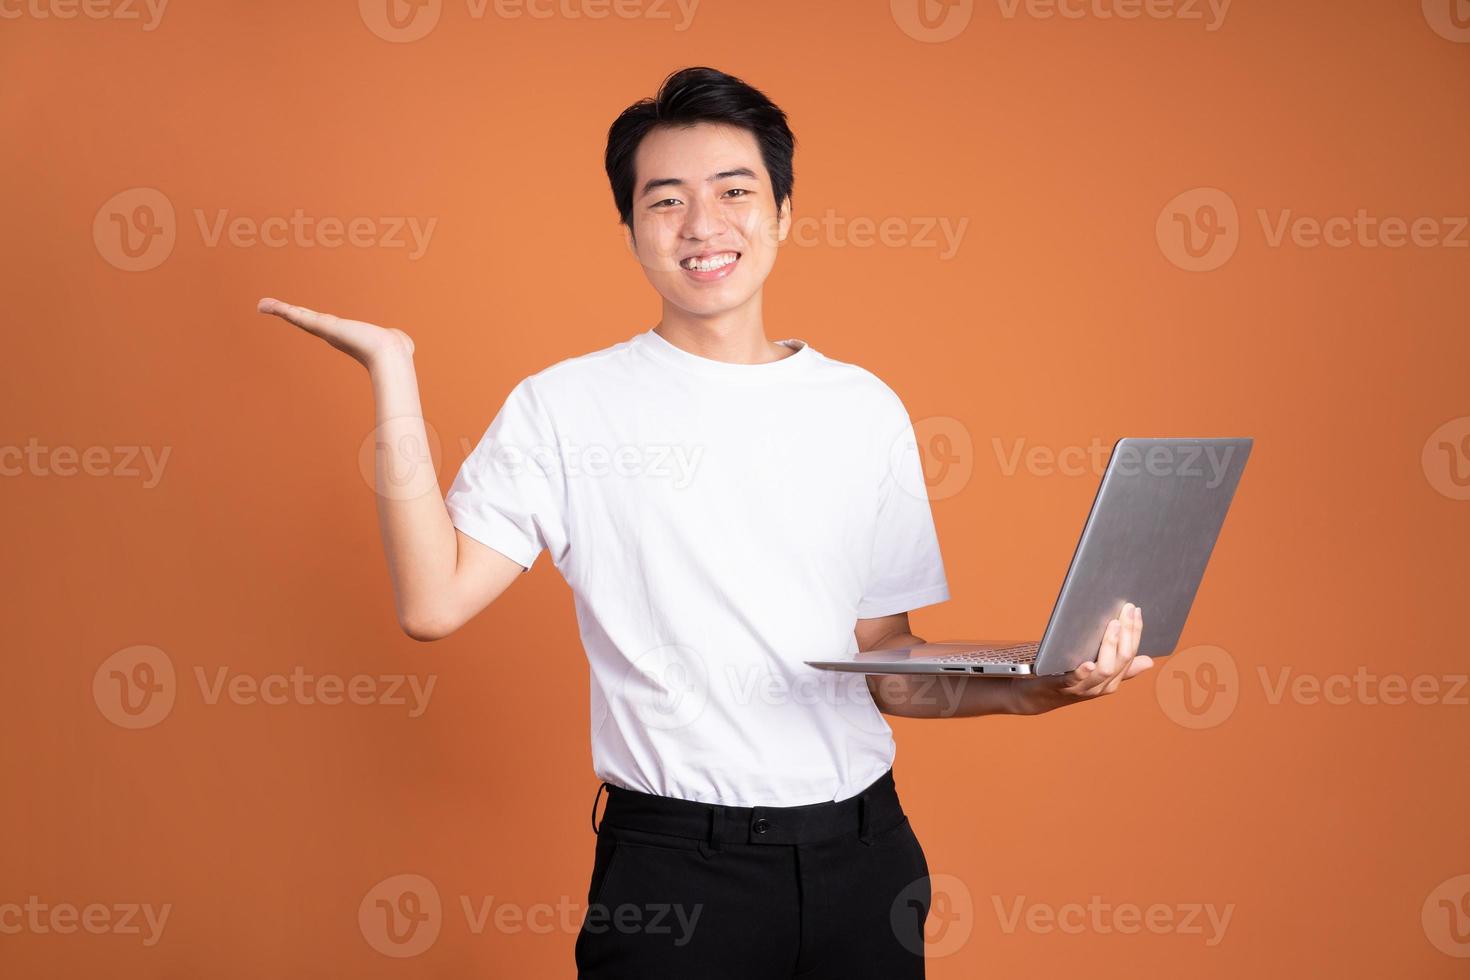 asian man holding laptop, isolated on orange background photo